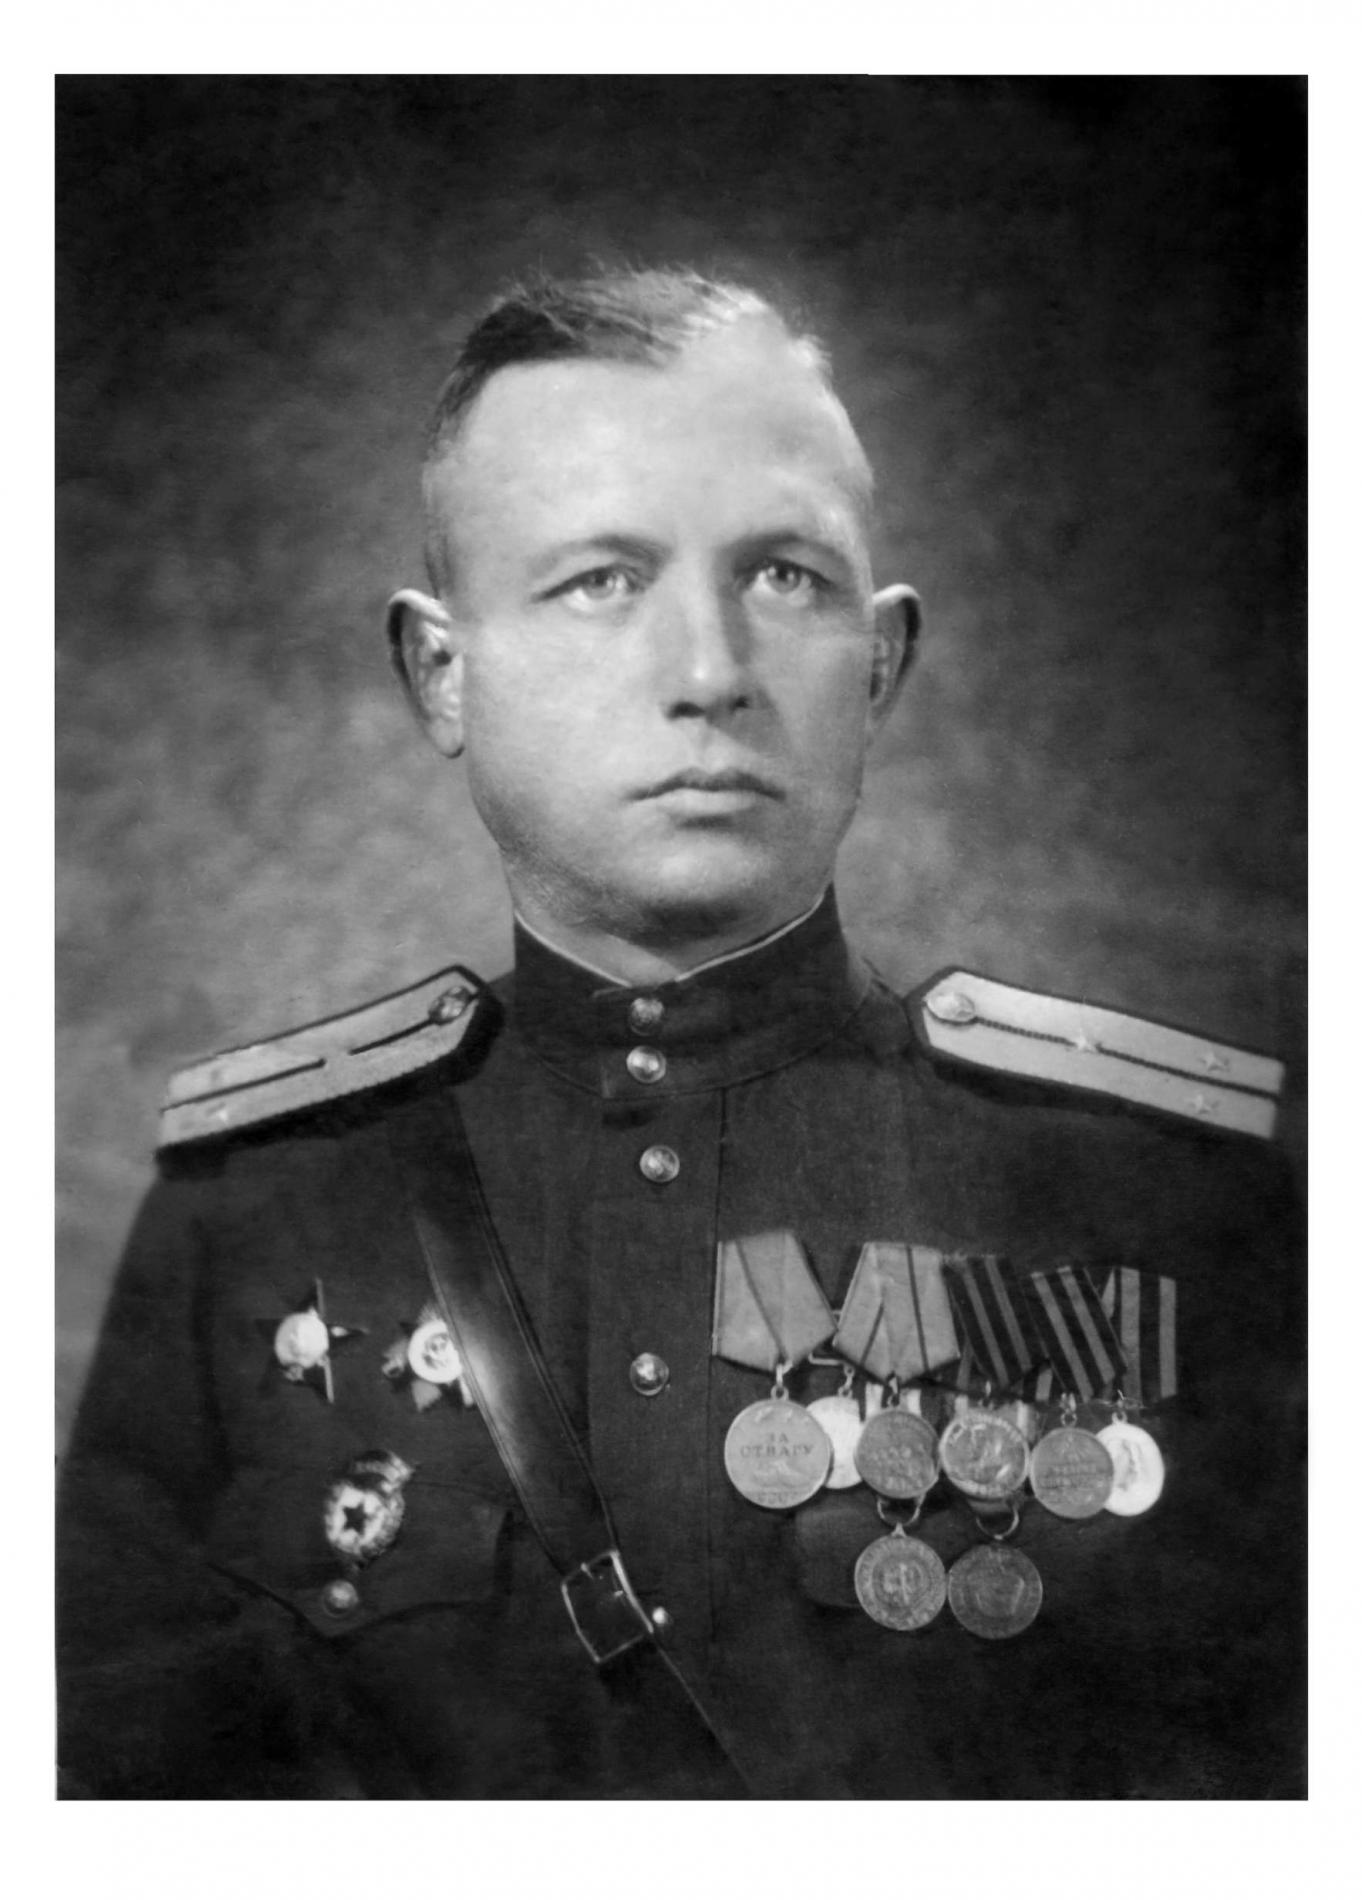 Гвардии старший лейтенант Марчук В.М., Германия, 1945 г.